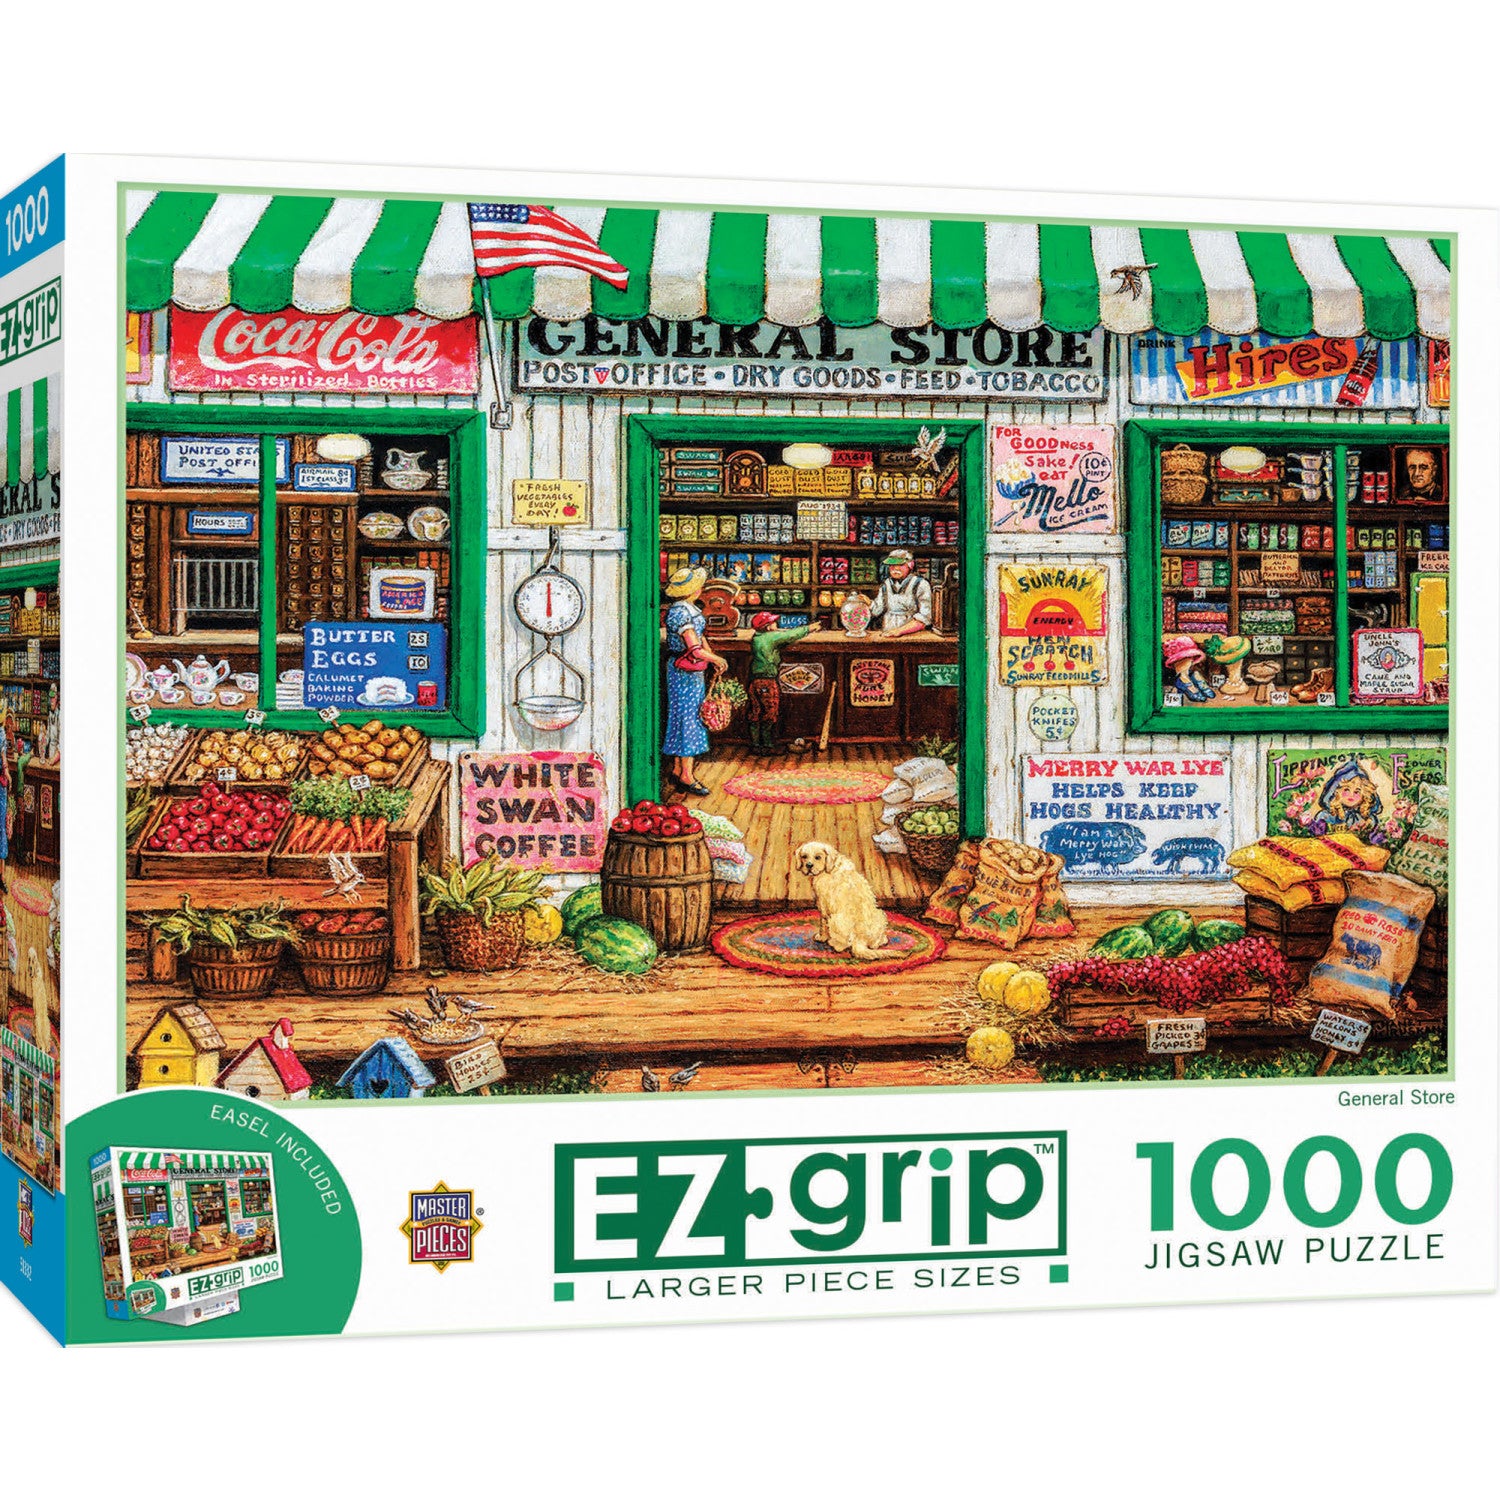 EZ Grip - General Store 1000 Piece Jigsaw Puzzle